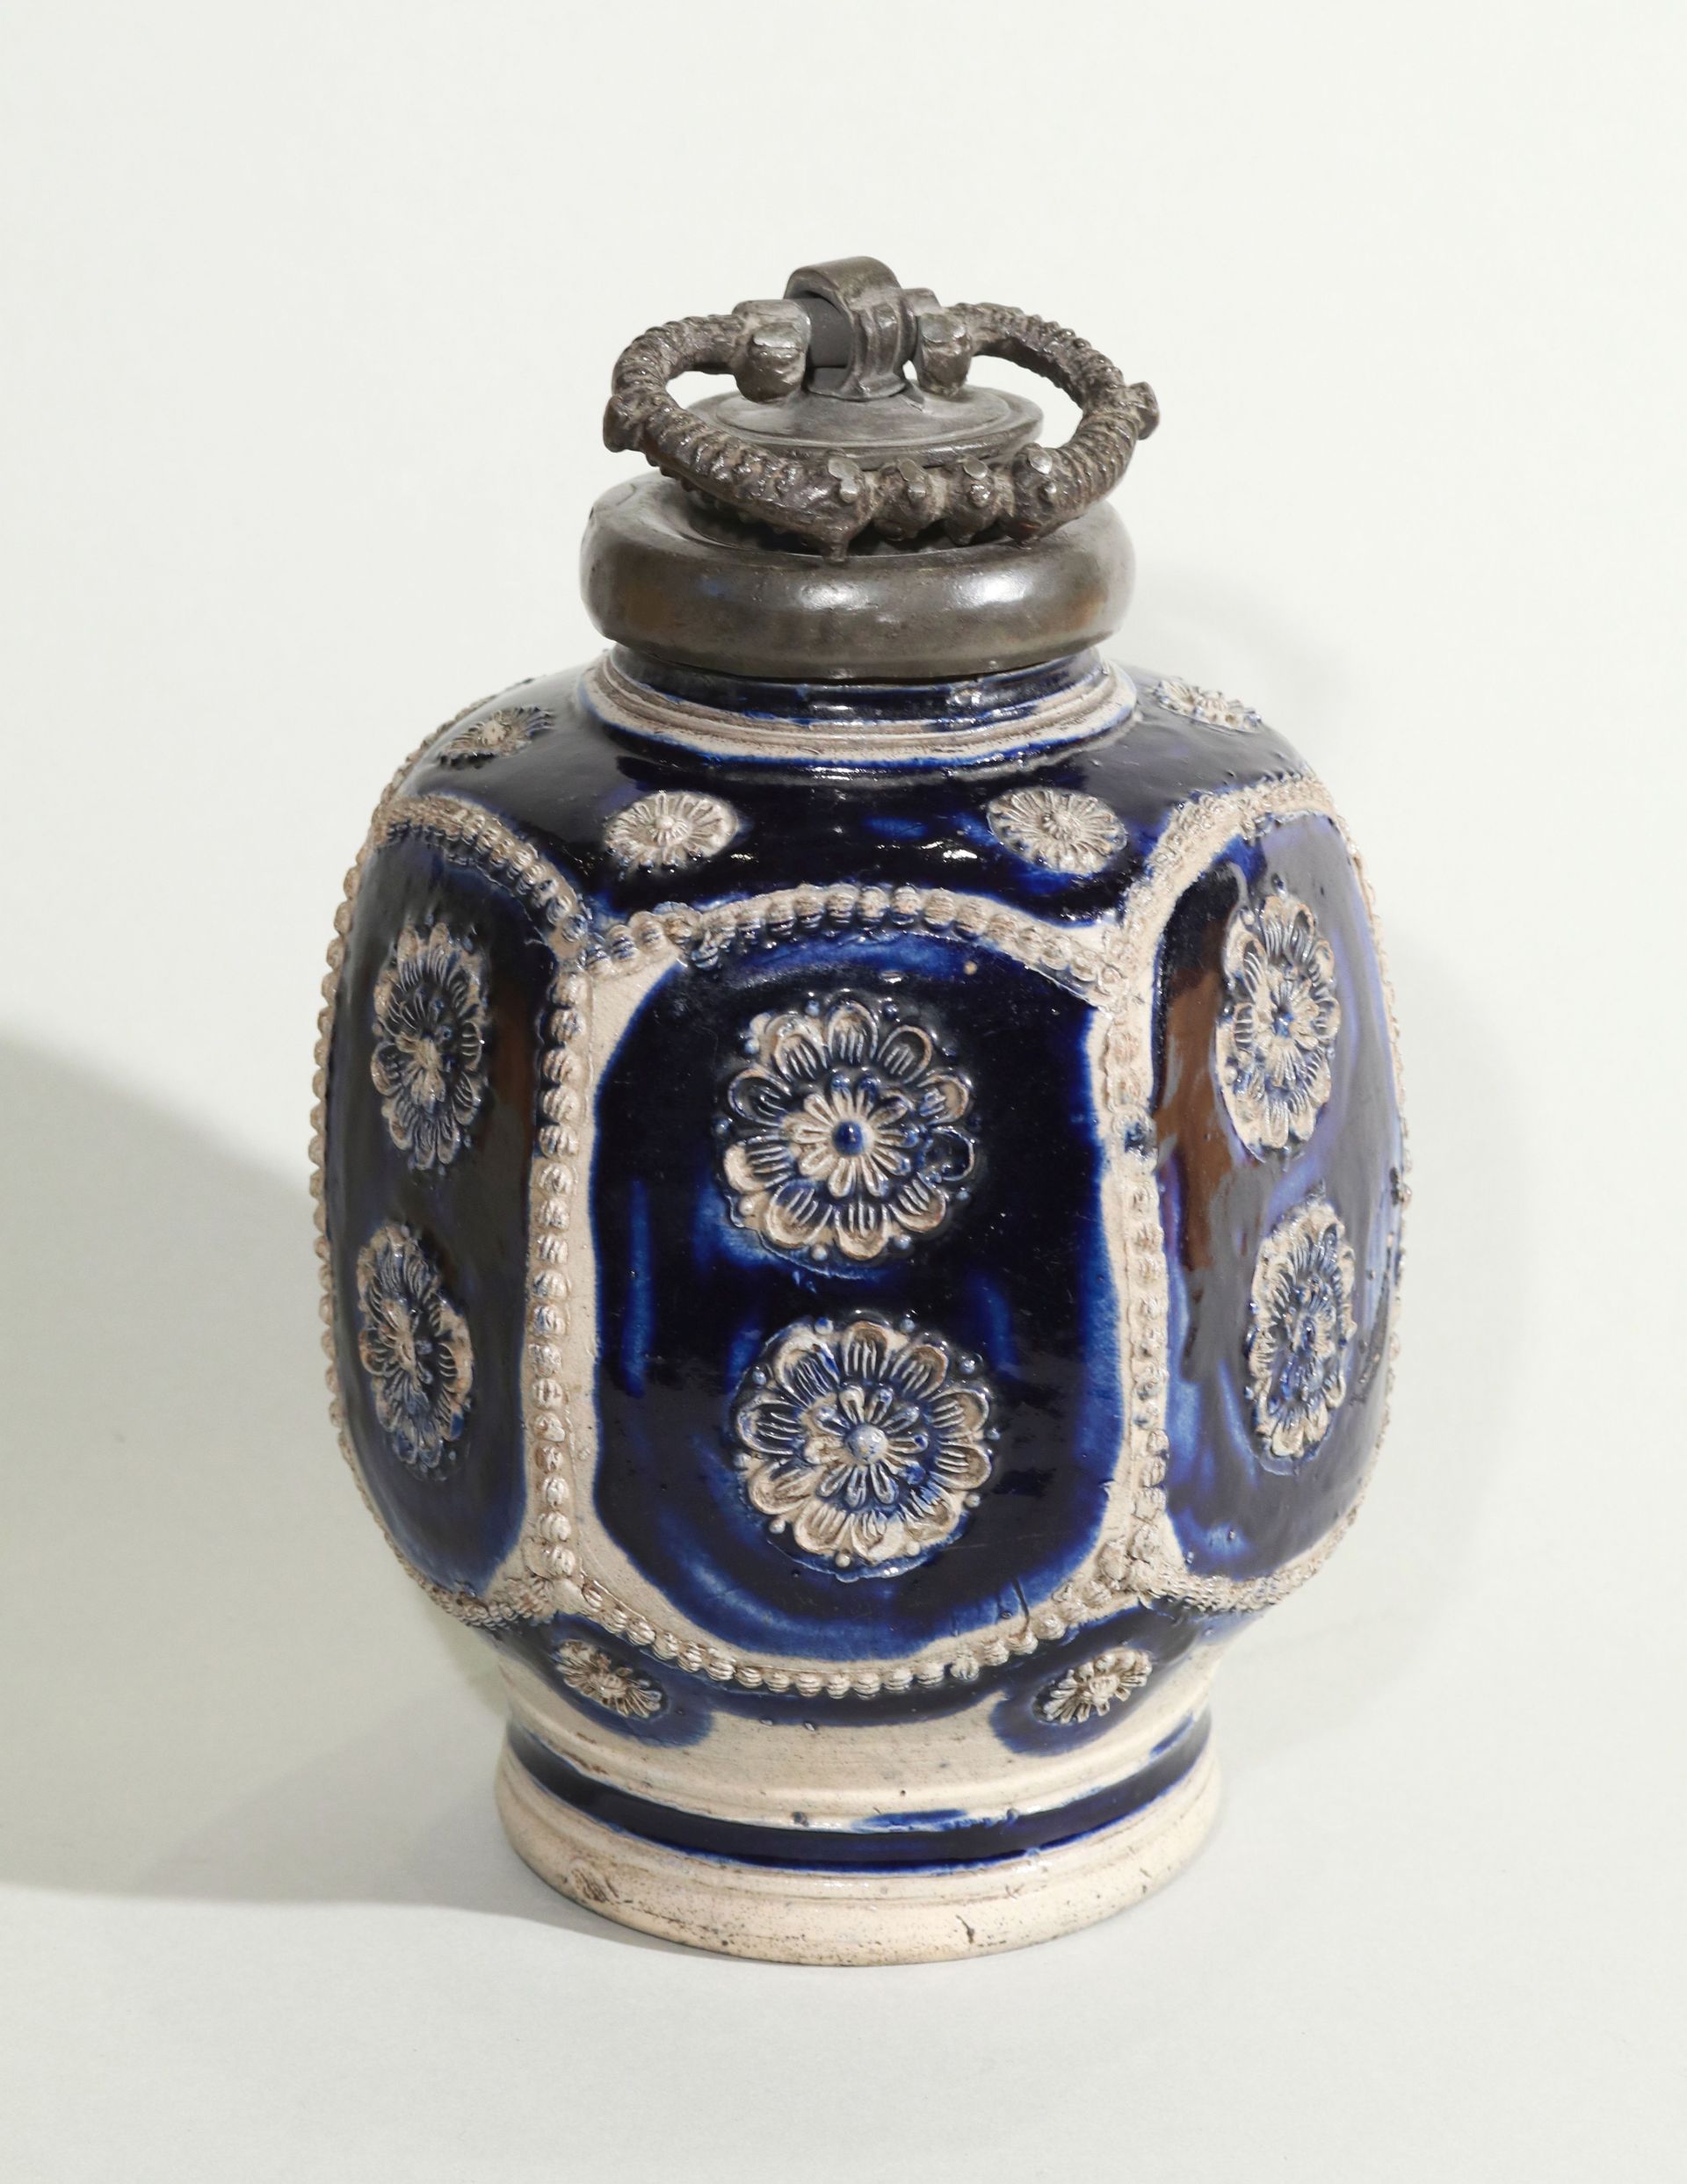 7th century westerwald blue salt glazed stoneware bottle